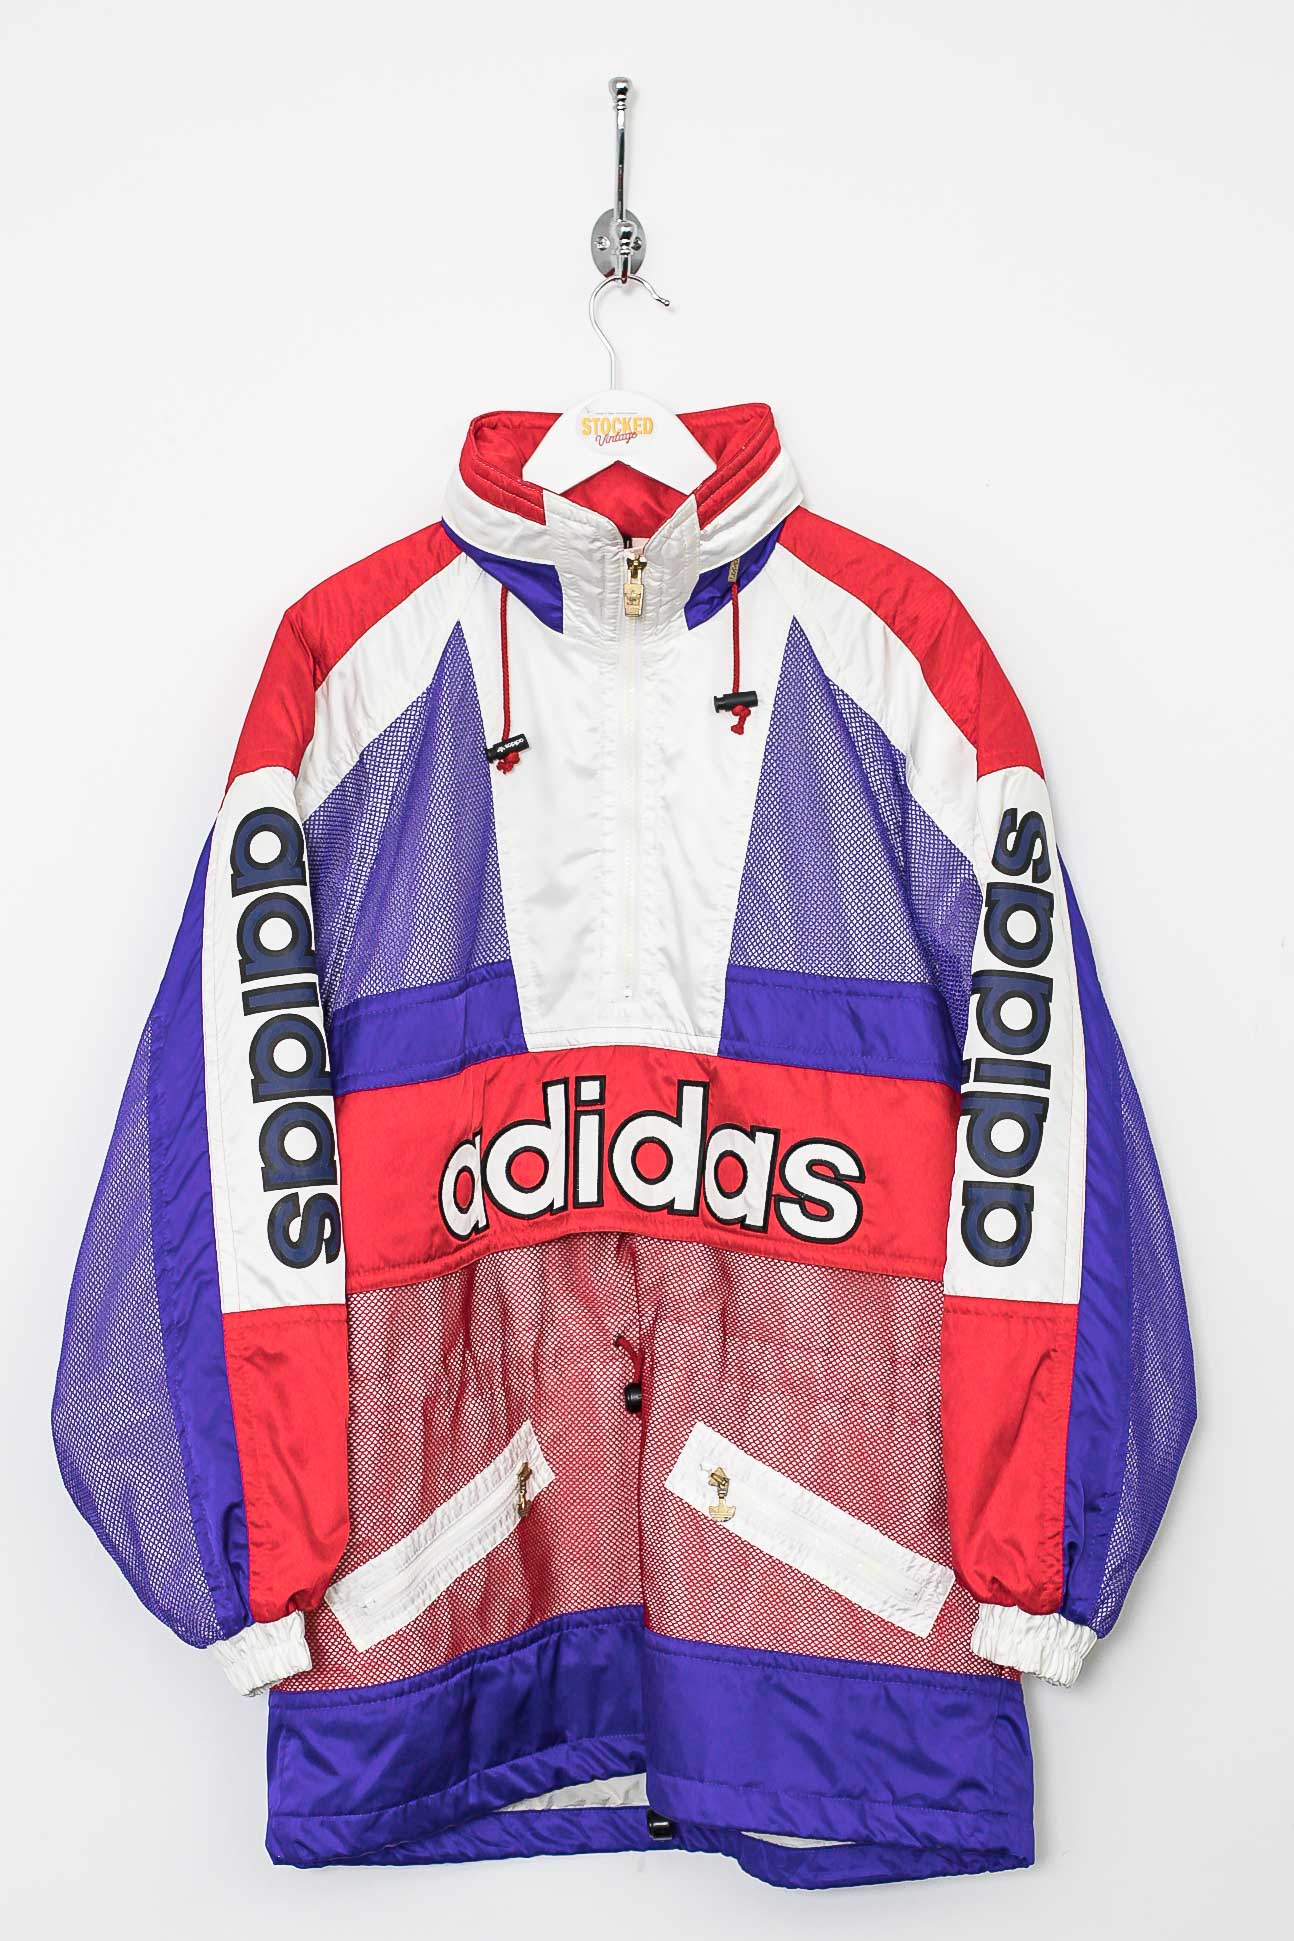 ADIDAS-W XPERIOR XC JKT WONDERFUL RED - Cross-country ski jacket